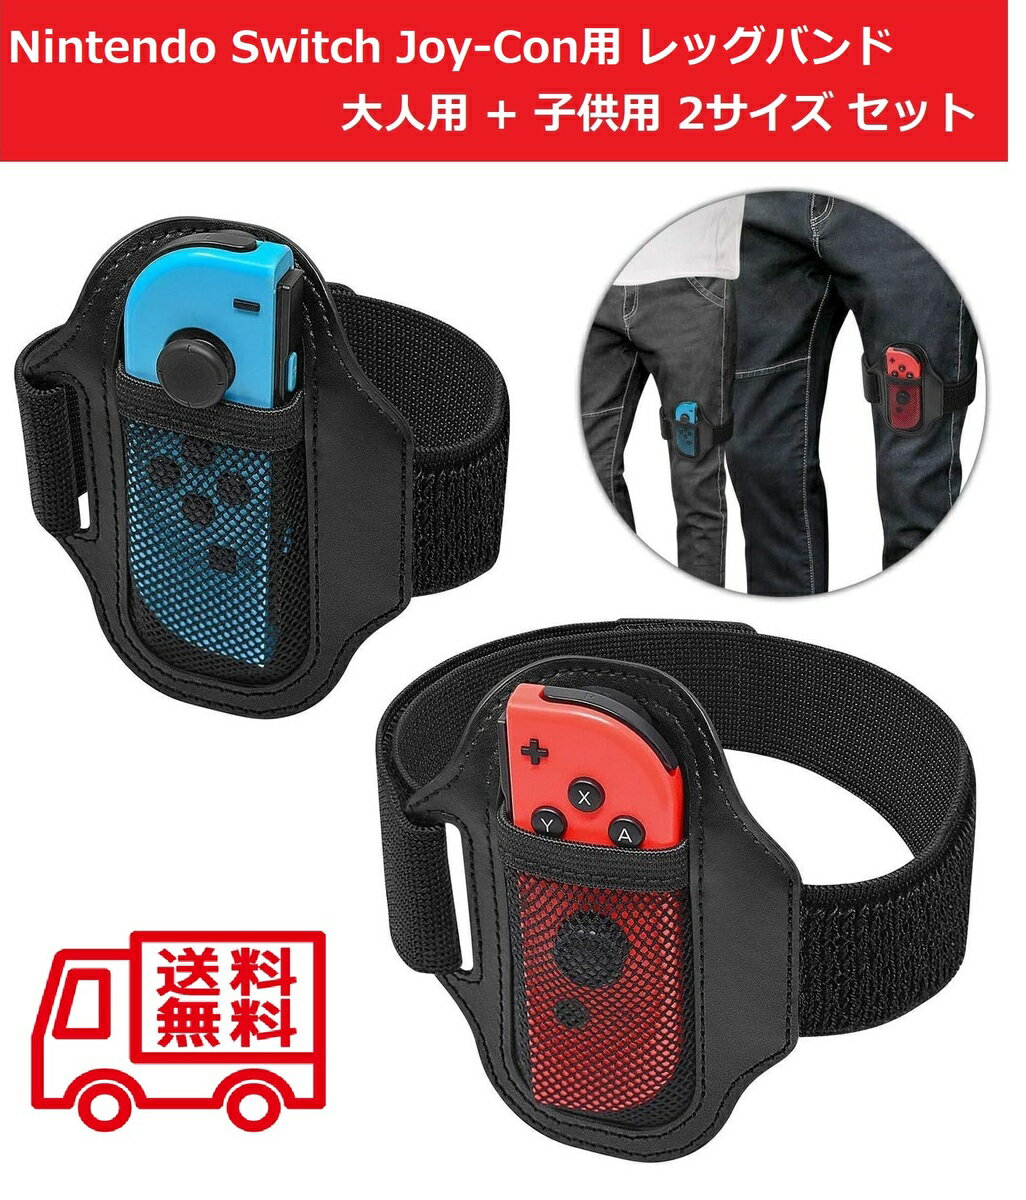  任天堂 Nintendo Switch Joy-Con用 レッグストラップ バンド リングフィットアドベンチャー対応 大人用サイズ+子供用サイズ 2個セット 弾力性 サイズ調整可